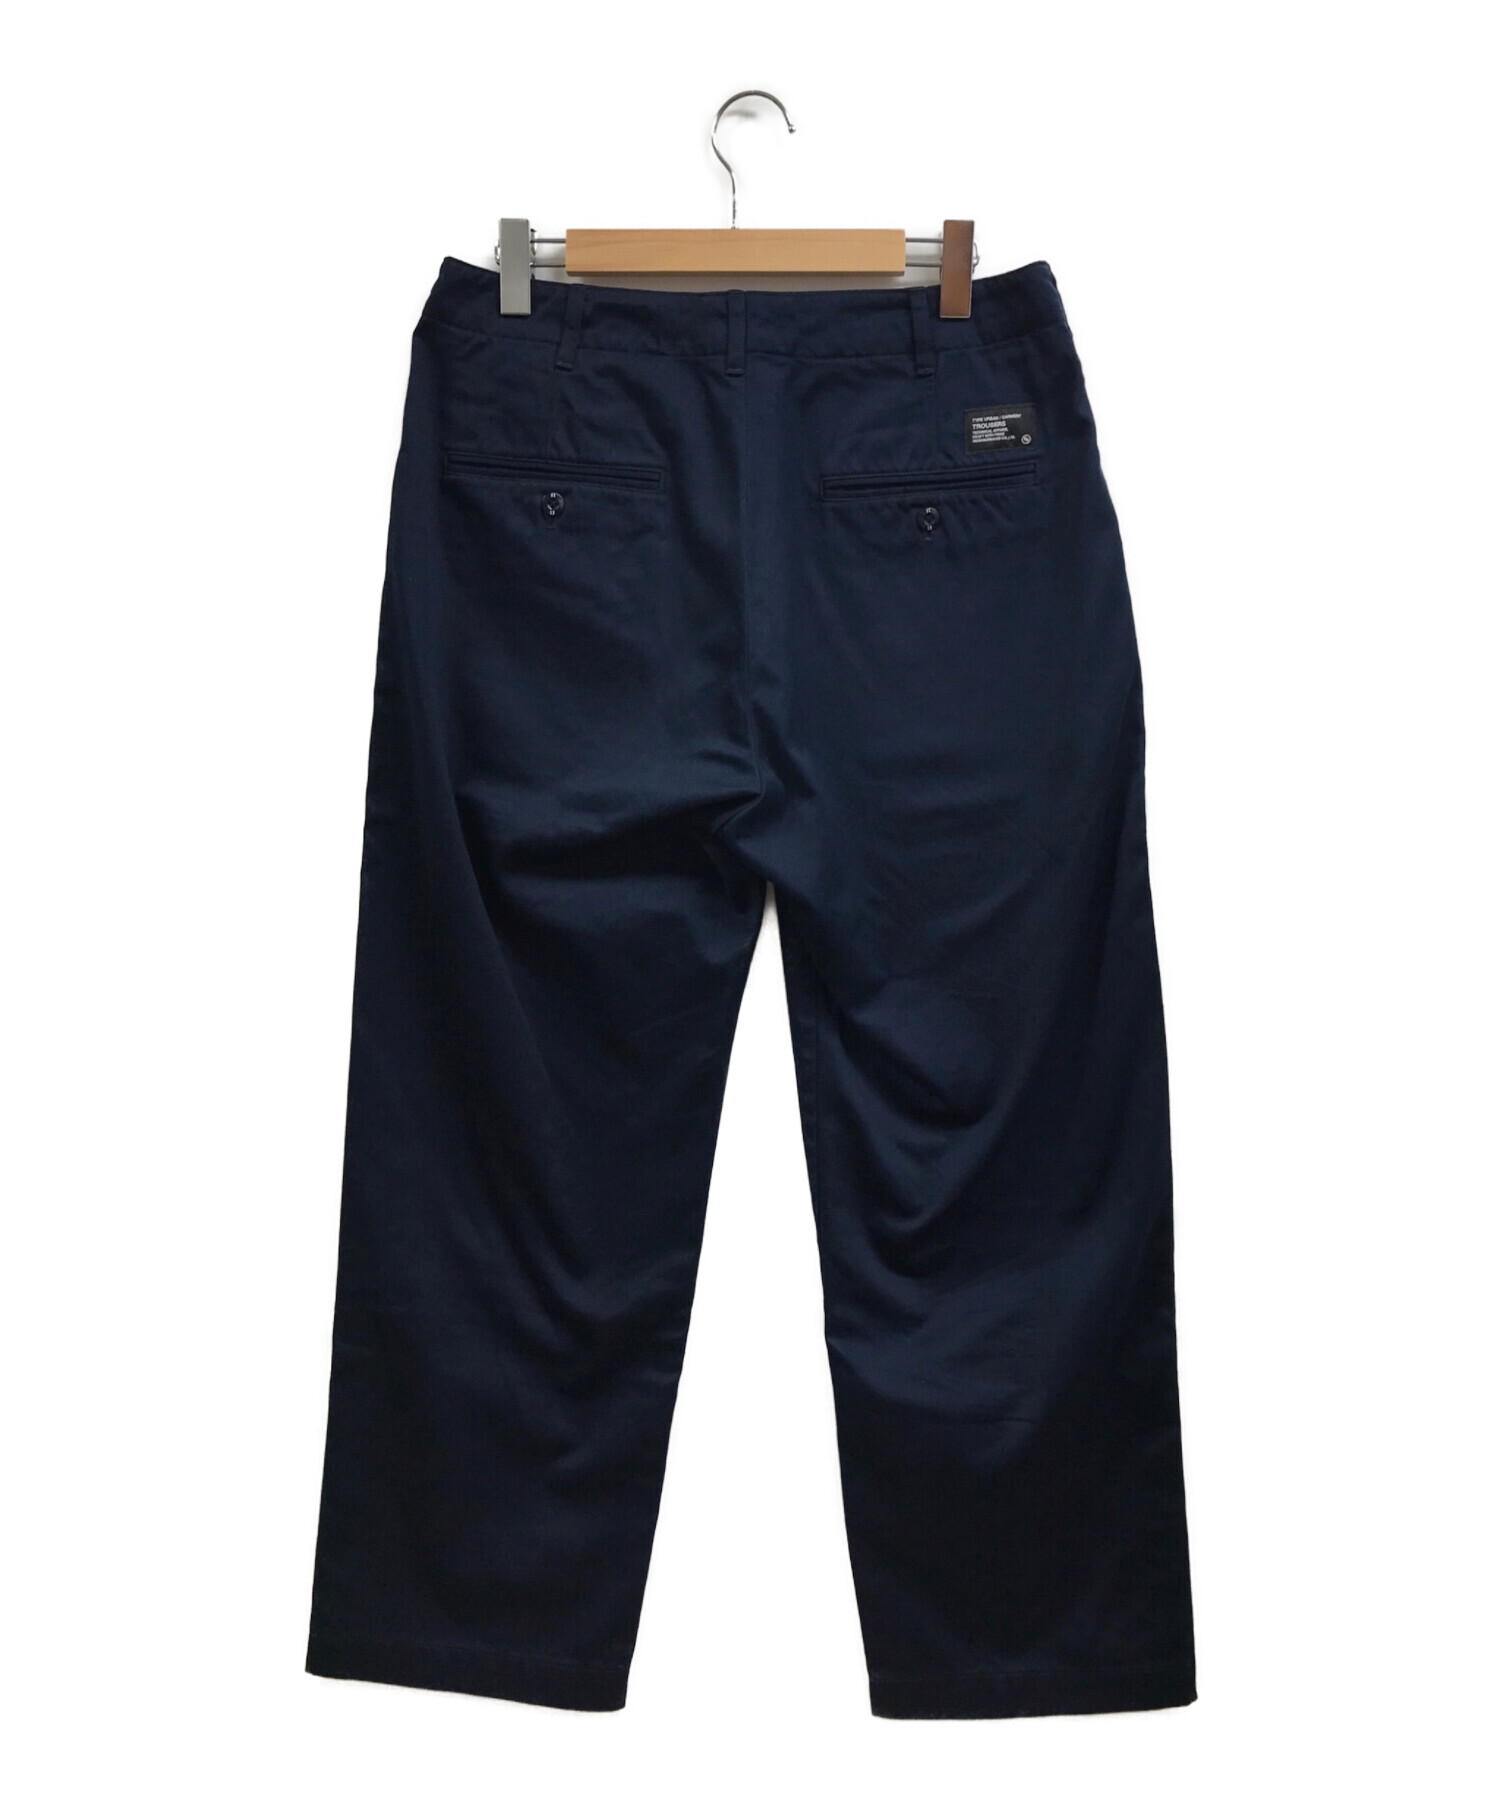 オンライン小売店 23S/S NEIGHBORHOOD CLASSIC CHINO PANTS - パンツ